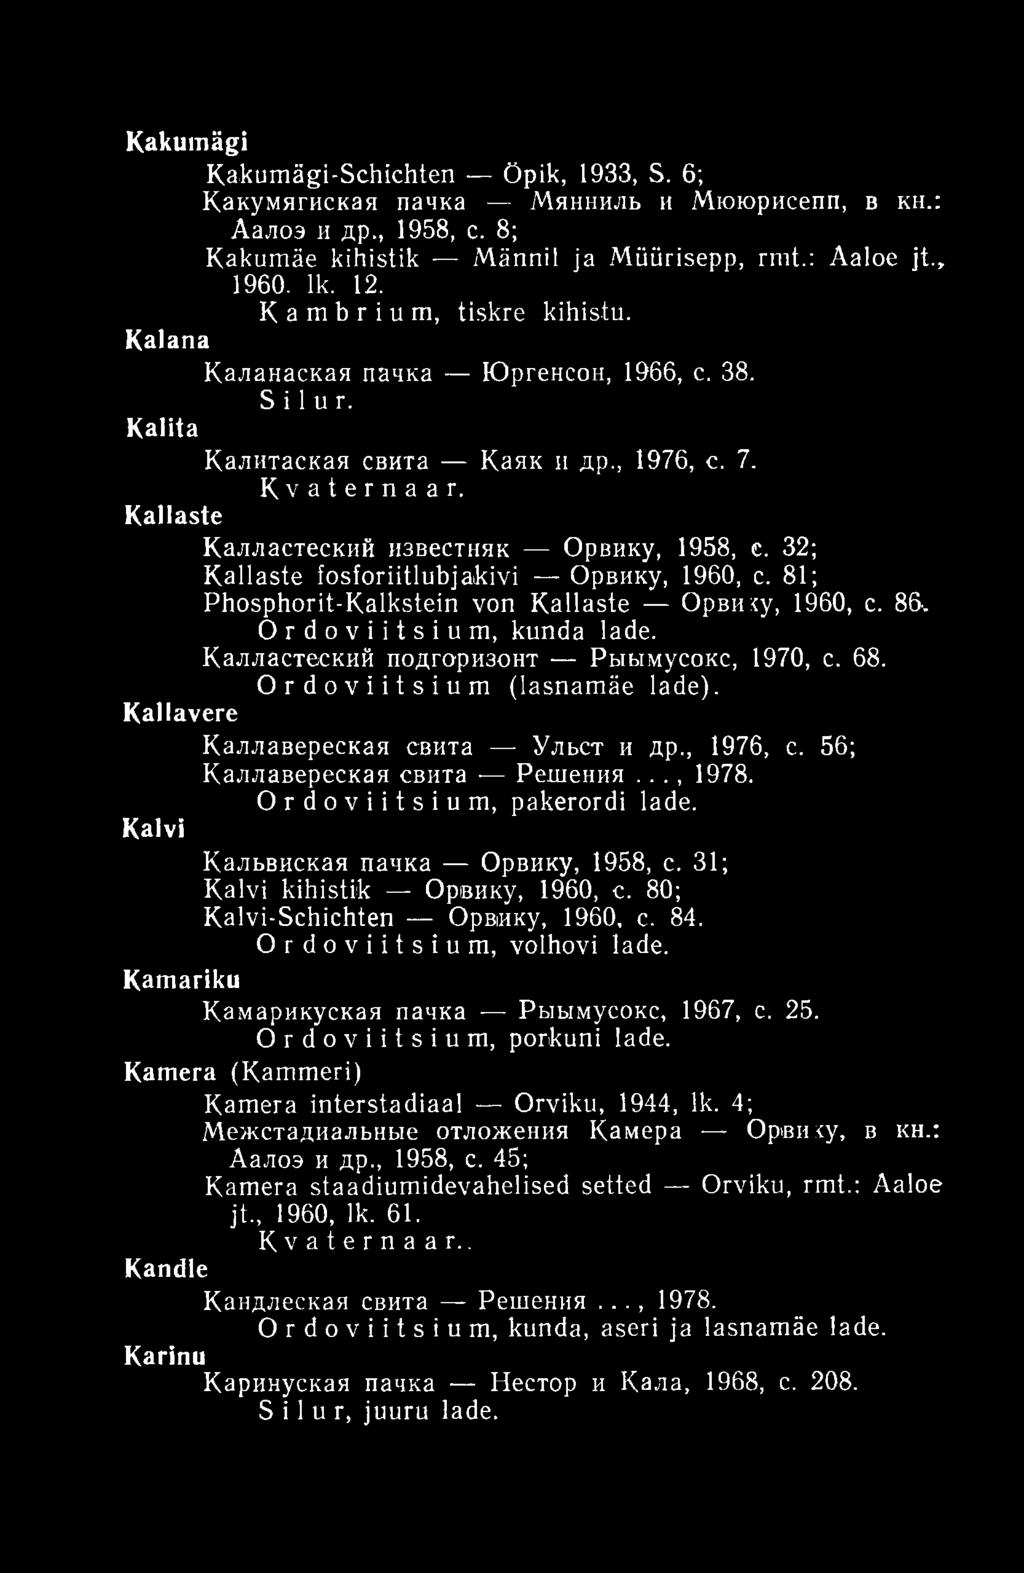 32; Kallaste fosforiitlubjakivi Орвику, 1960, с. 81; Phosphorit-Kalkstein von Kallaste Орви:<у, 1960, с. 86-, Ordoviitsium, kunda lade. Калластеский подгоризонт Рыымусокс, 1970, с. 68.